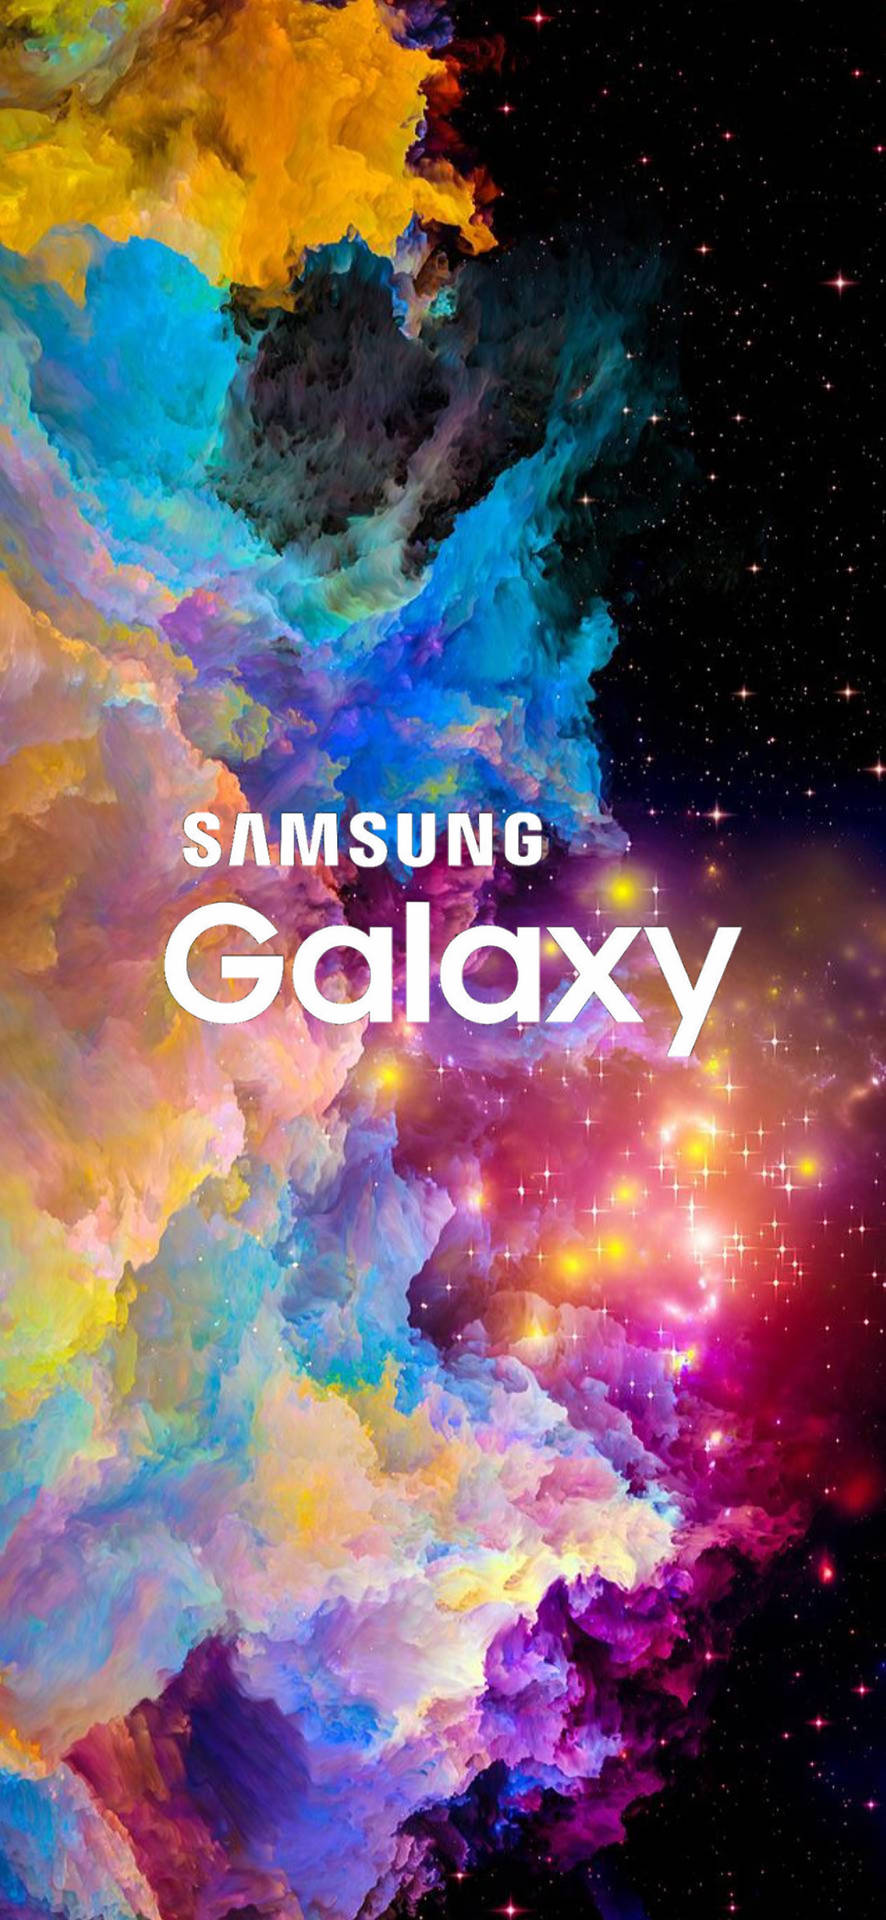 Samsung Galaxy Colorful Nebula Background